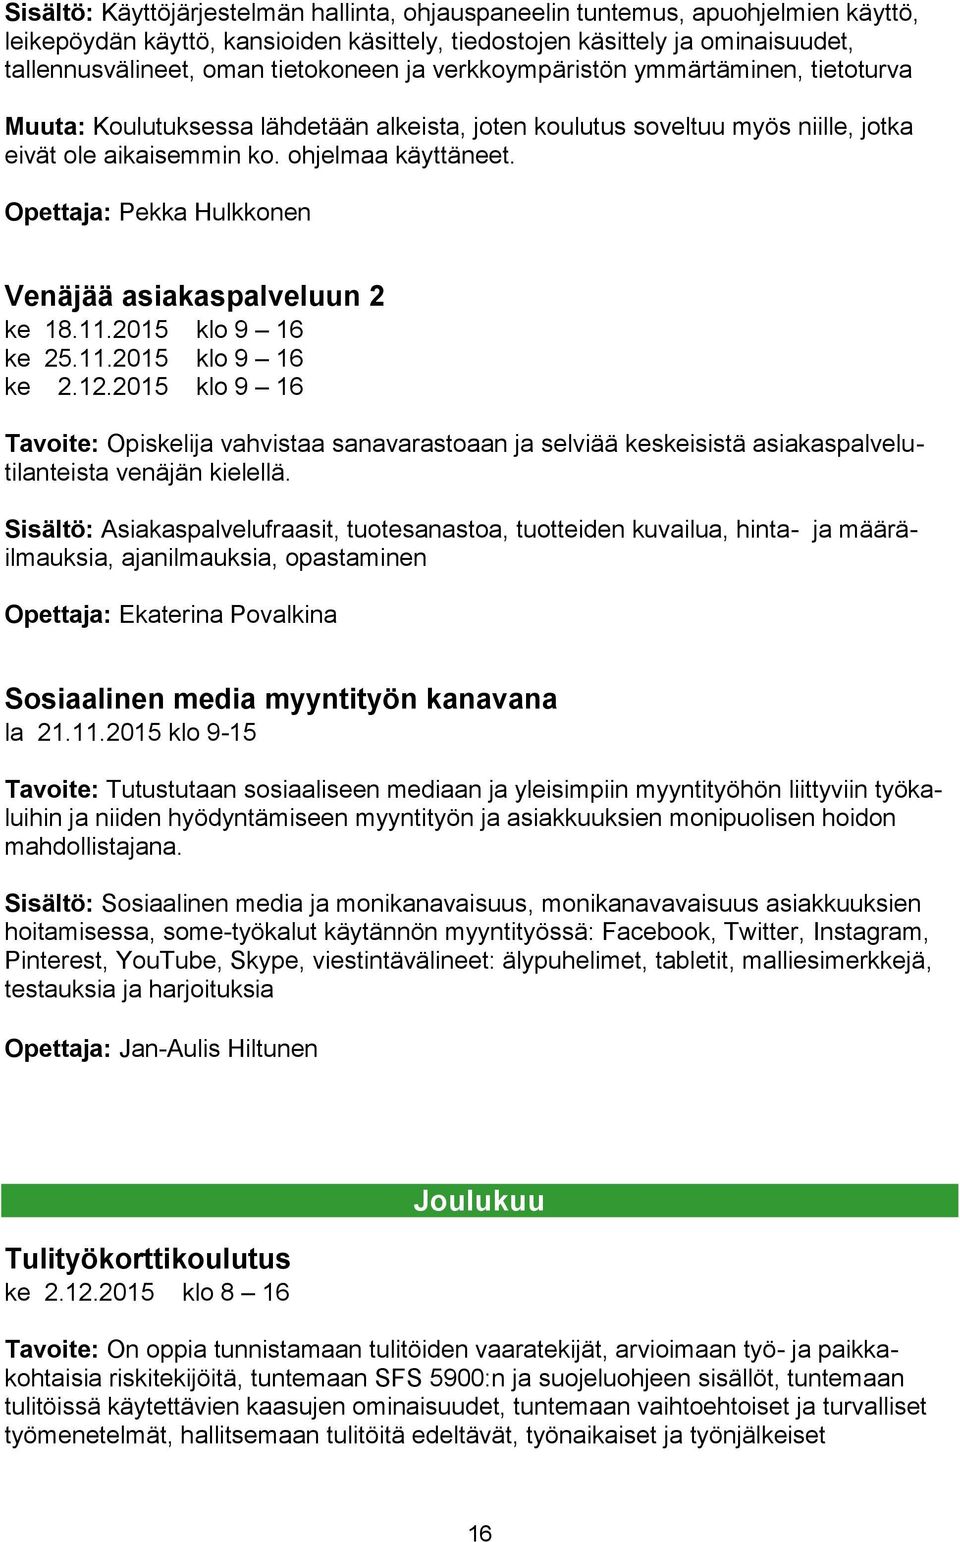 Opettaja: Pekka Hulkkonen Venäjää asiakaspalveluun 2 ke 18.11.2015 klo 9 16 ke 25.11.2015 klo 9 16 ke 2.12.